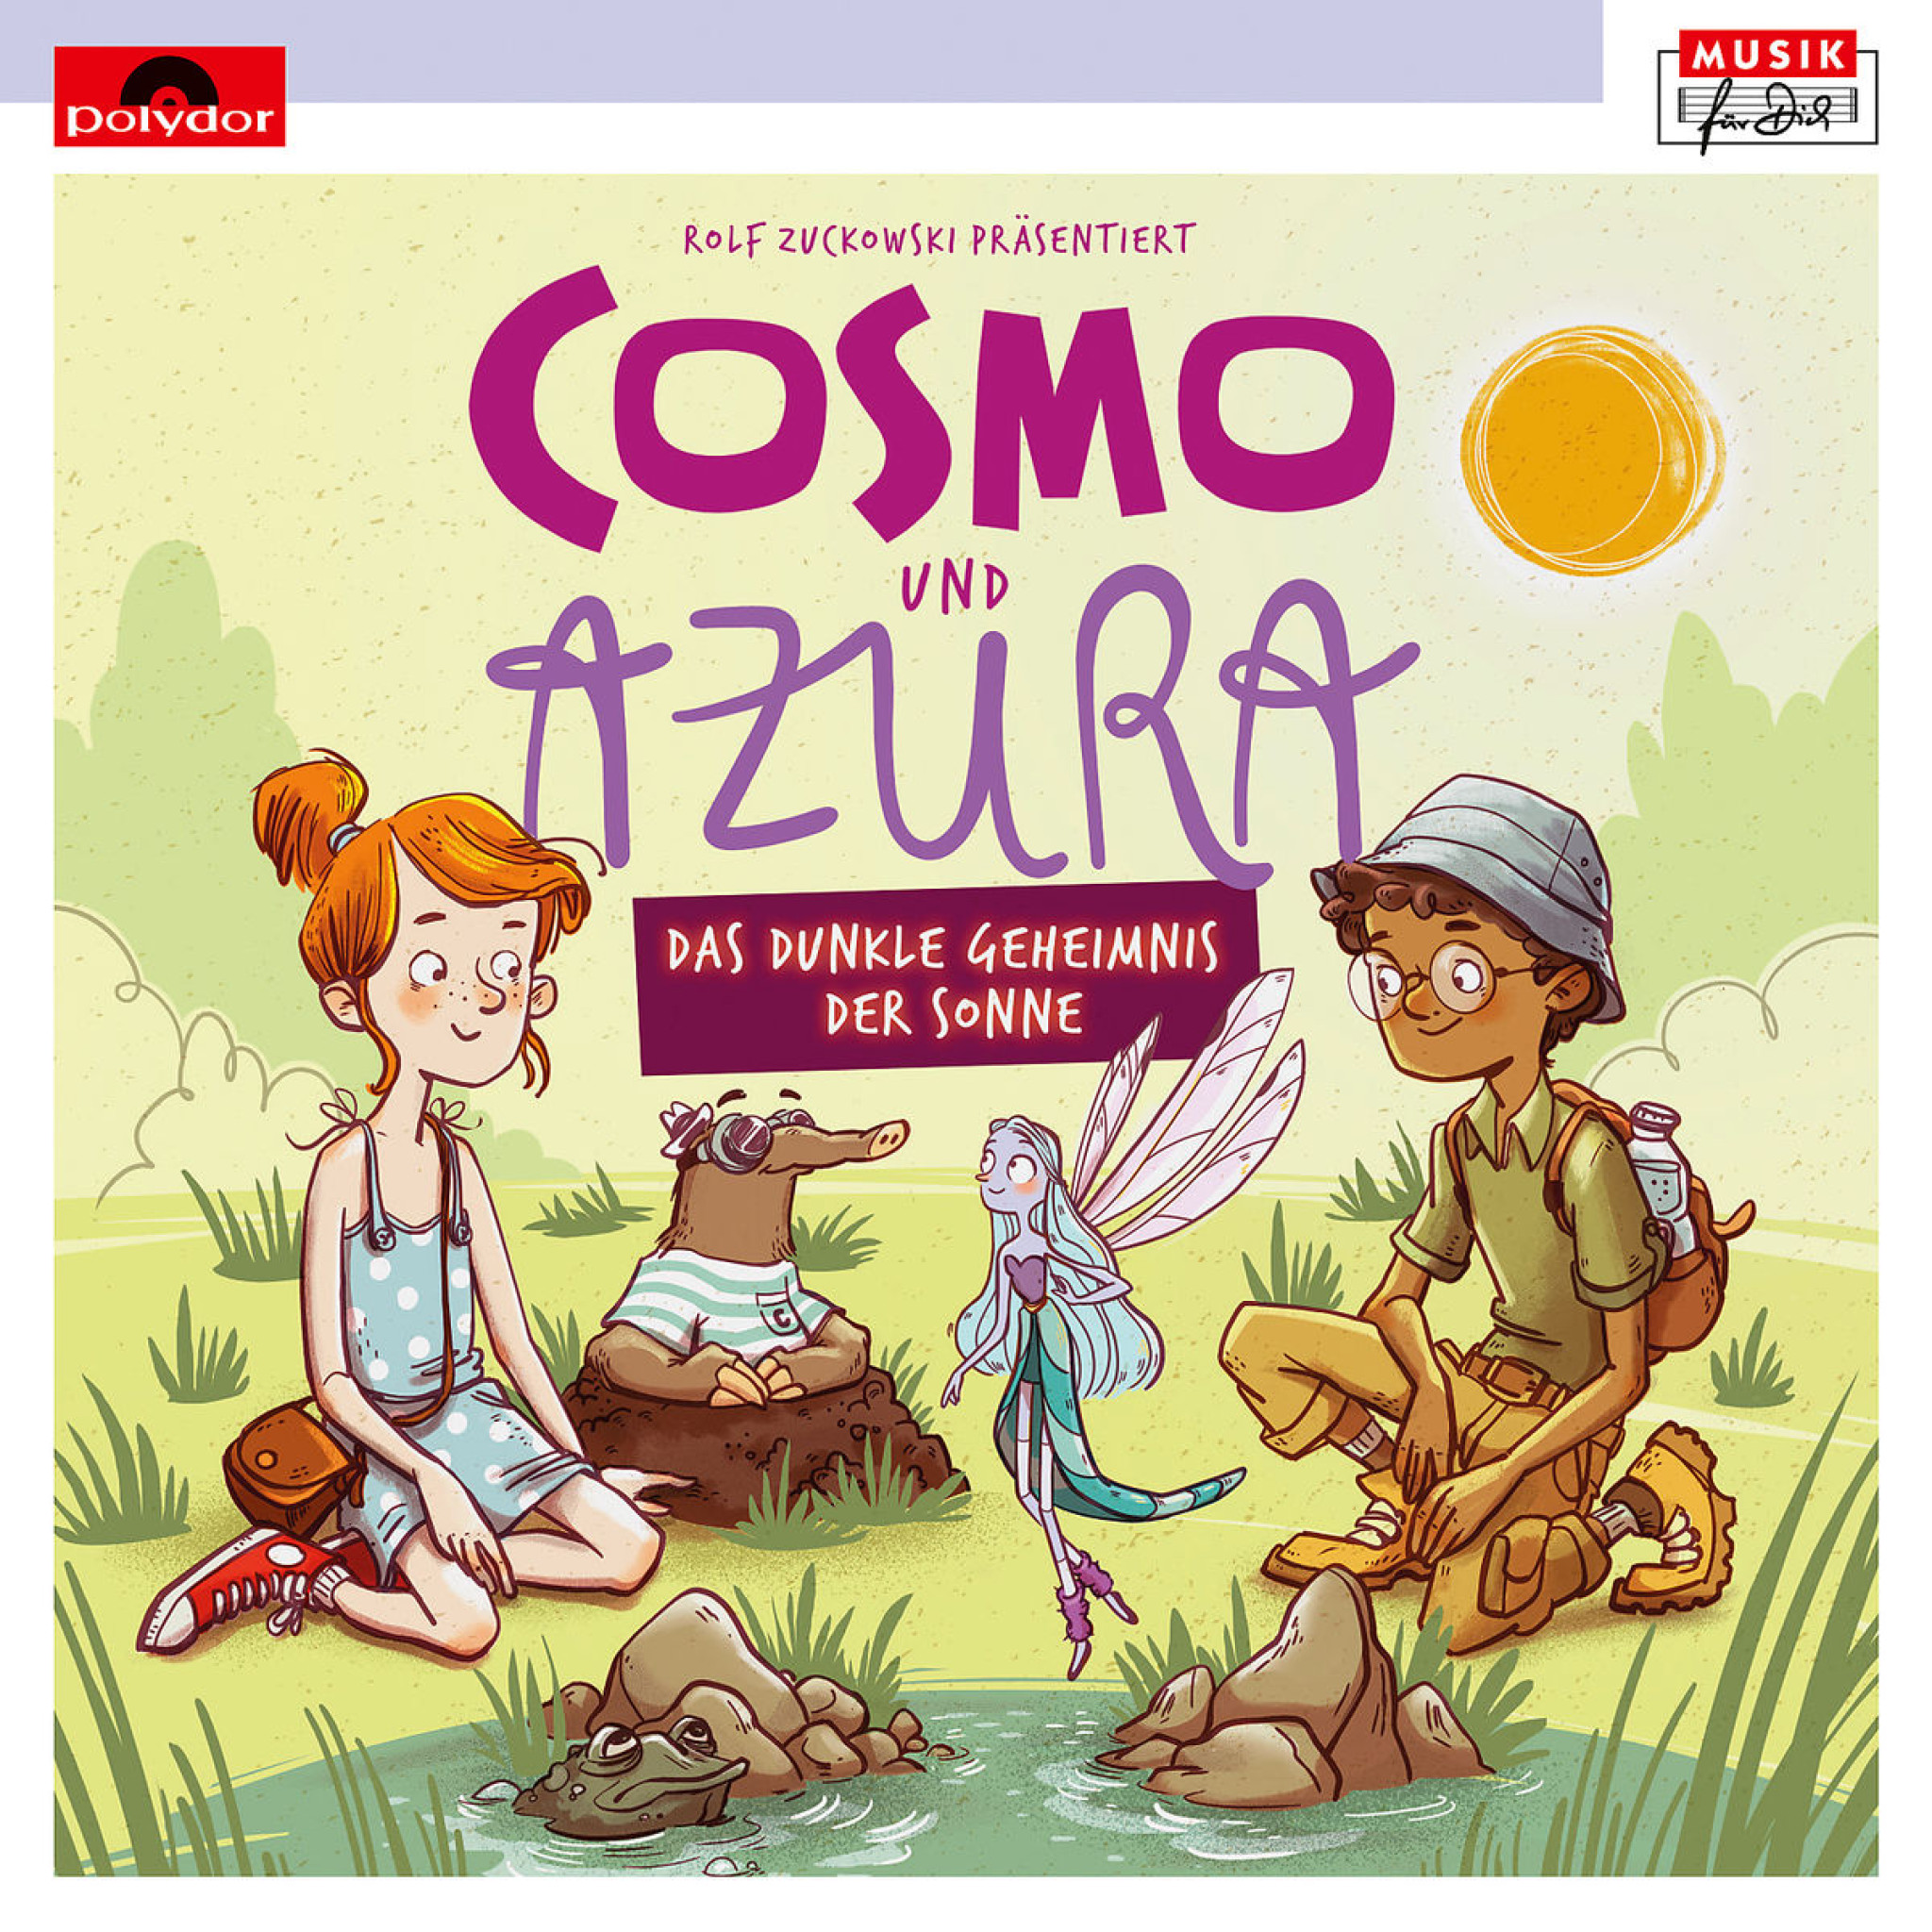 Rolf Zuckowski präs.: Cosmo und Azura - Das dunkle Geheimnis der Sonne